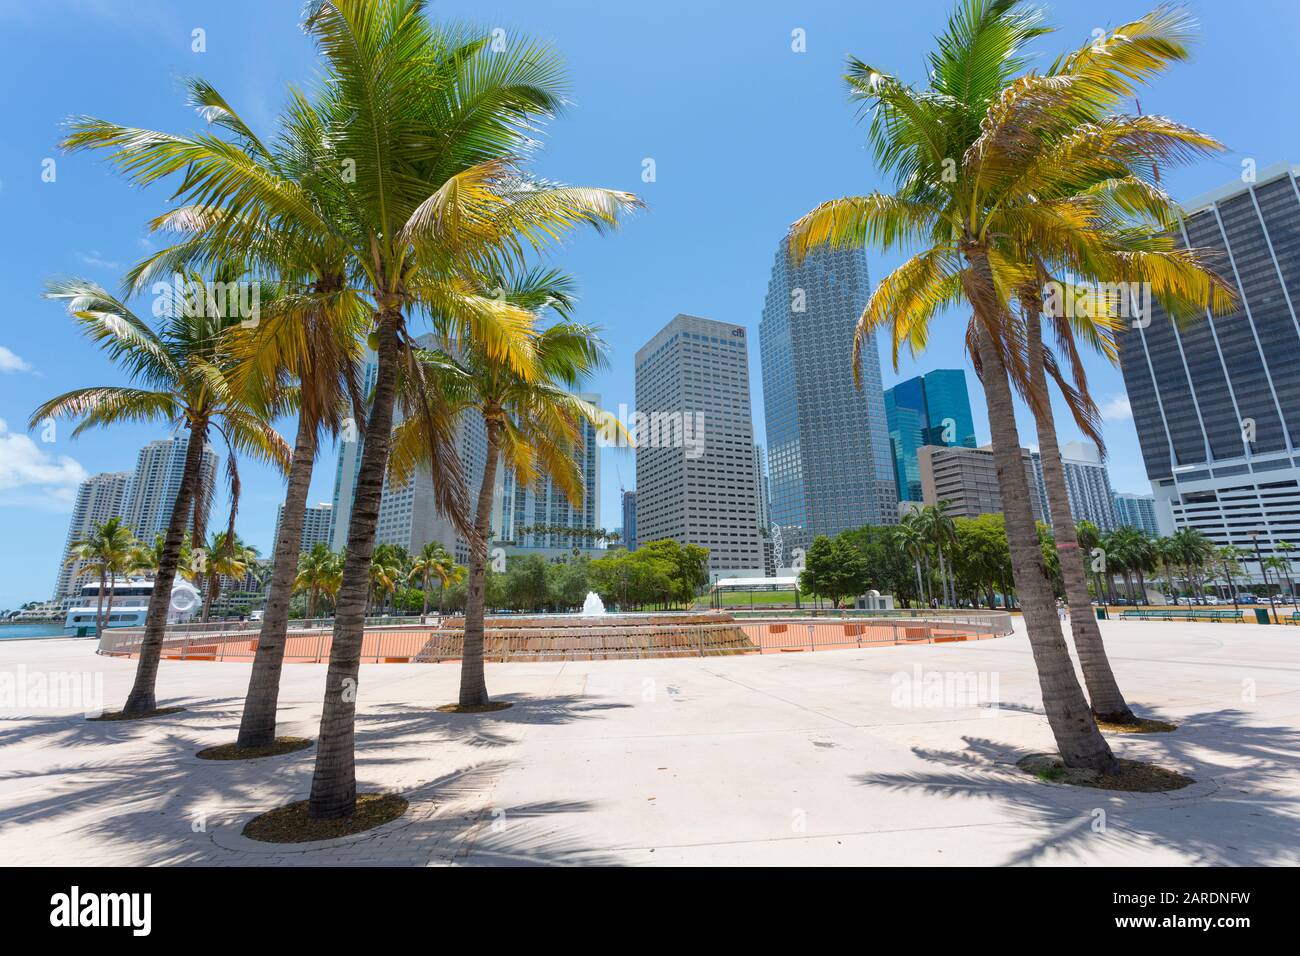 Bayfront Park et gratte-ciel de la ville dans le centre-ville, Miami, Floride, États-Unis d'Amérique, Amérique du Nord Banque D'Images